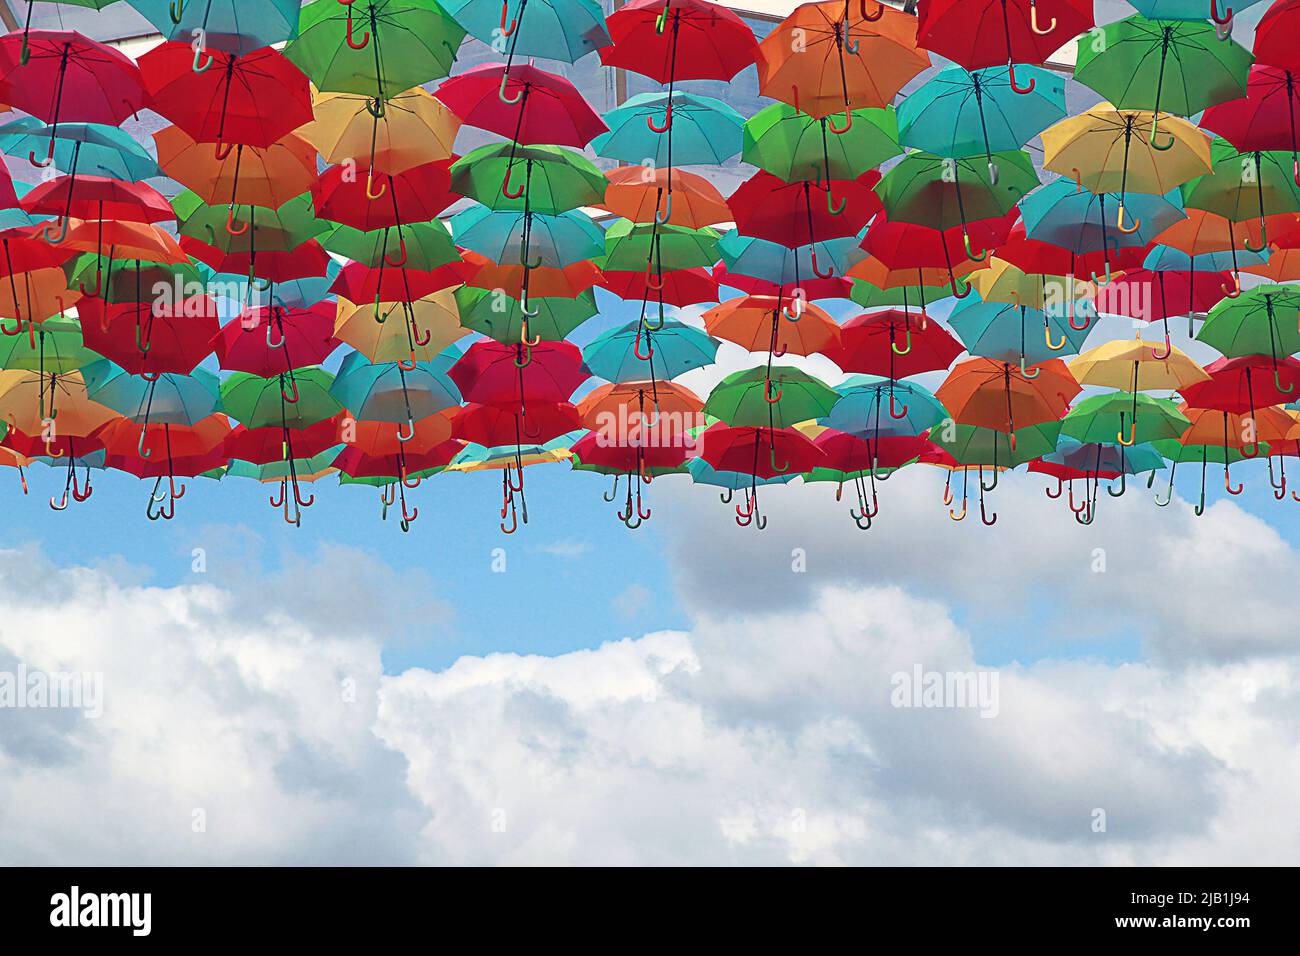 Haga lo mejor de un día lluvioso en Agueda - Portugal, ya que las sombrillas son arte Foto de stock